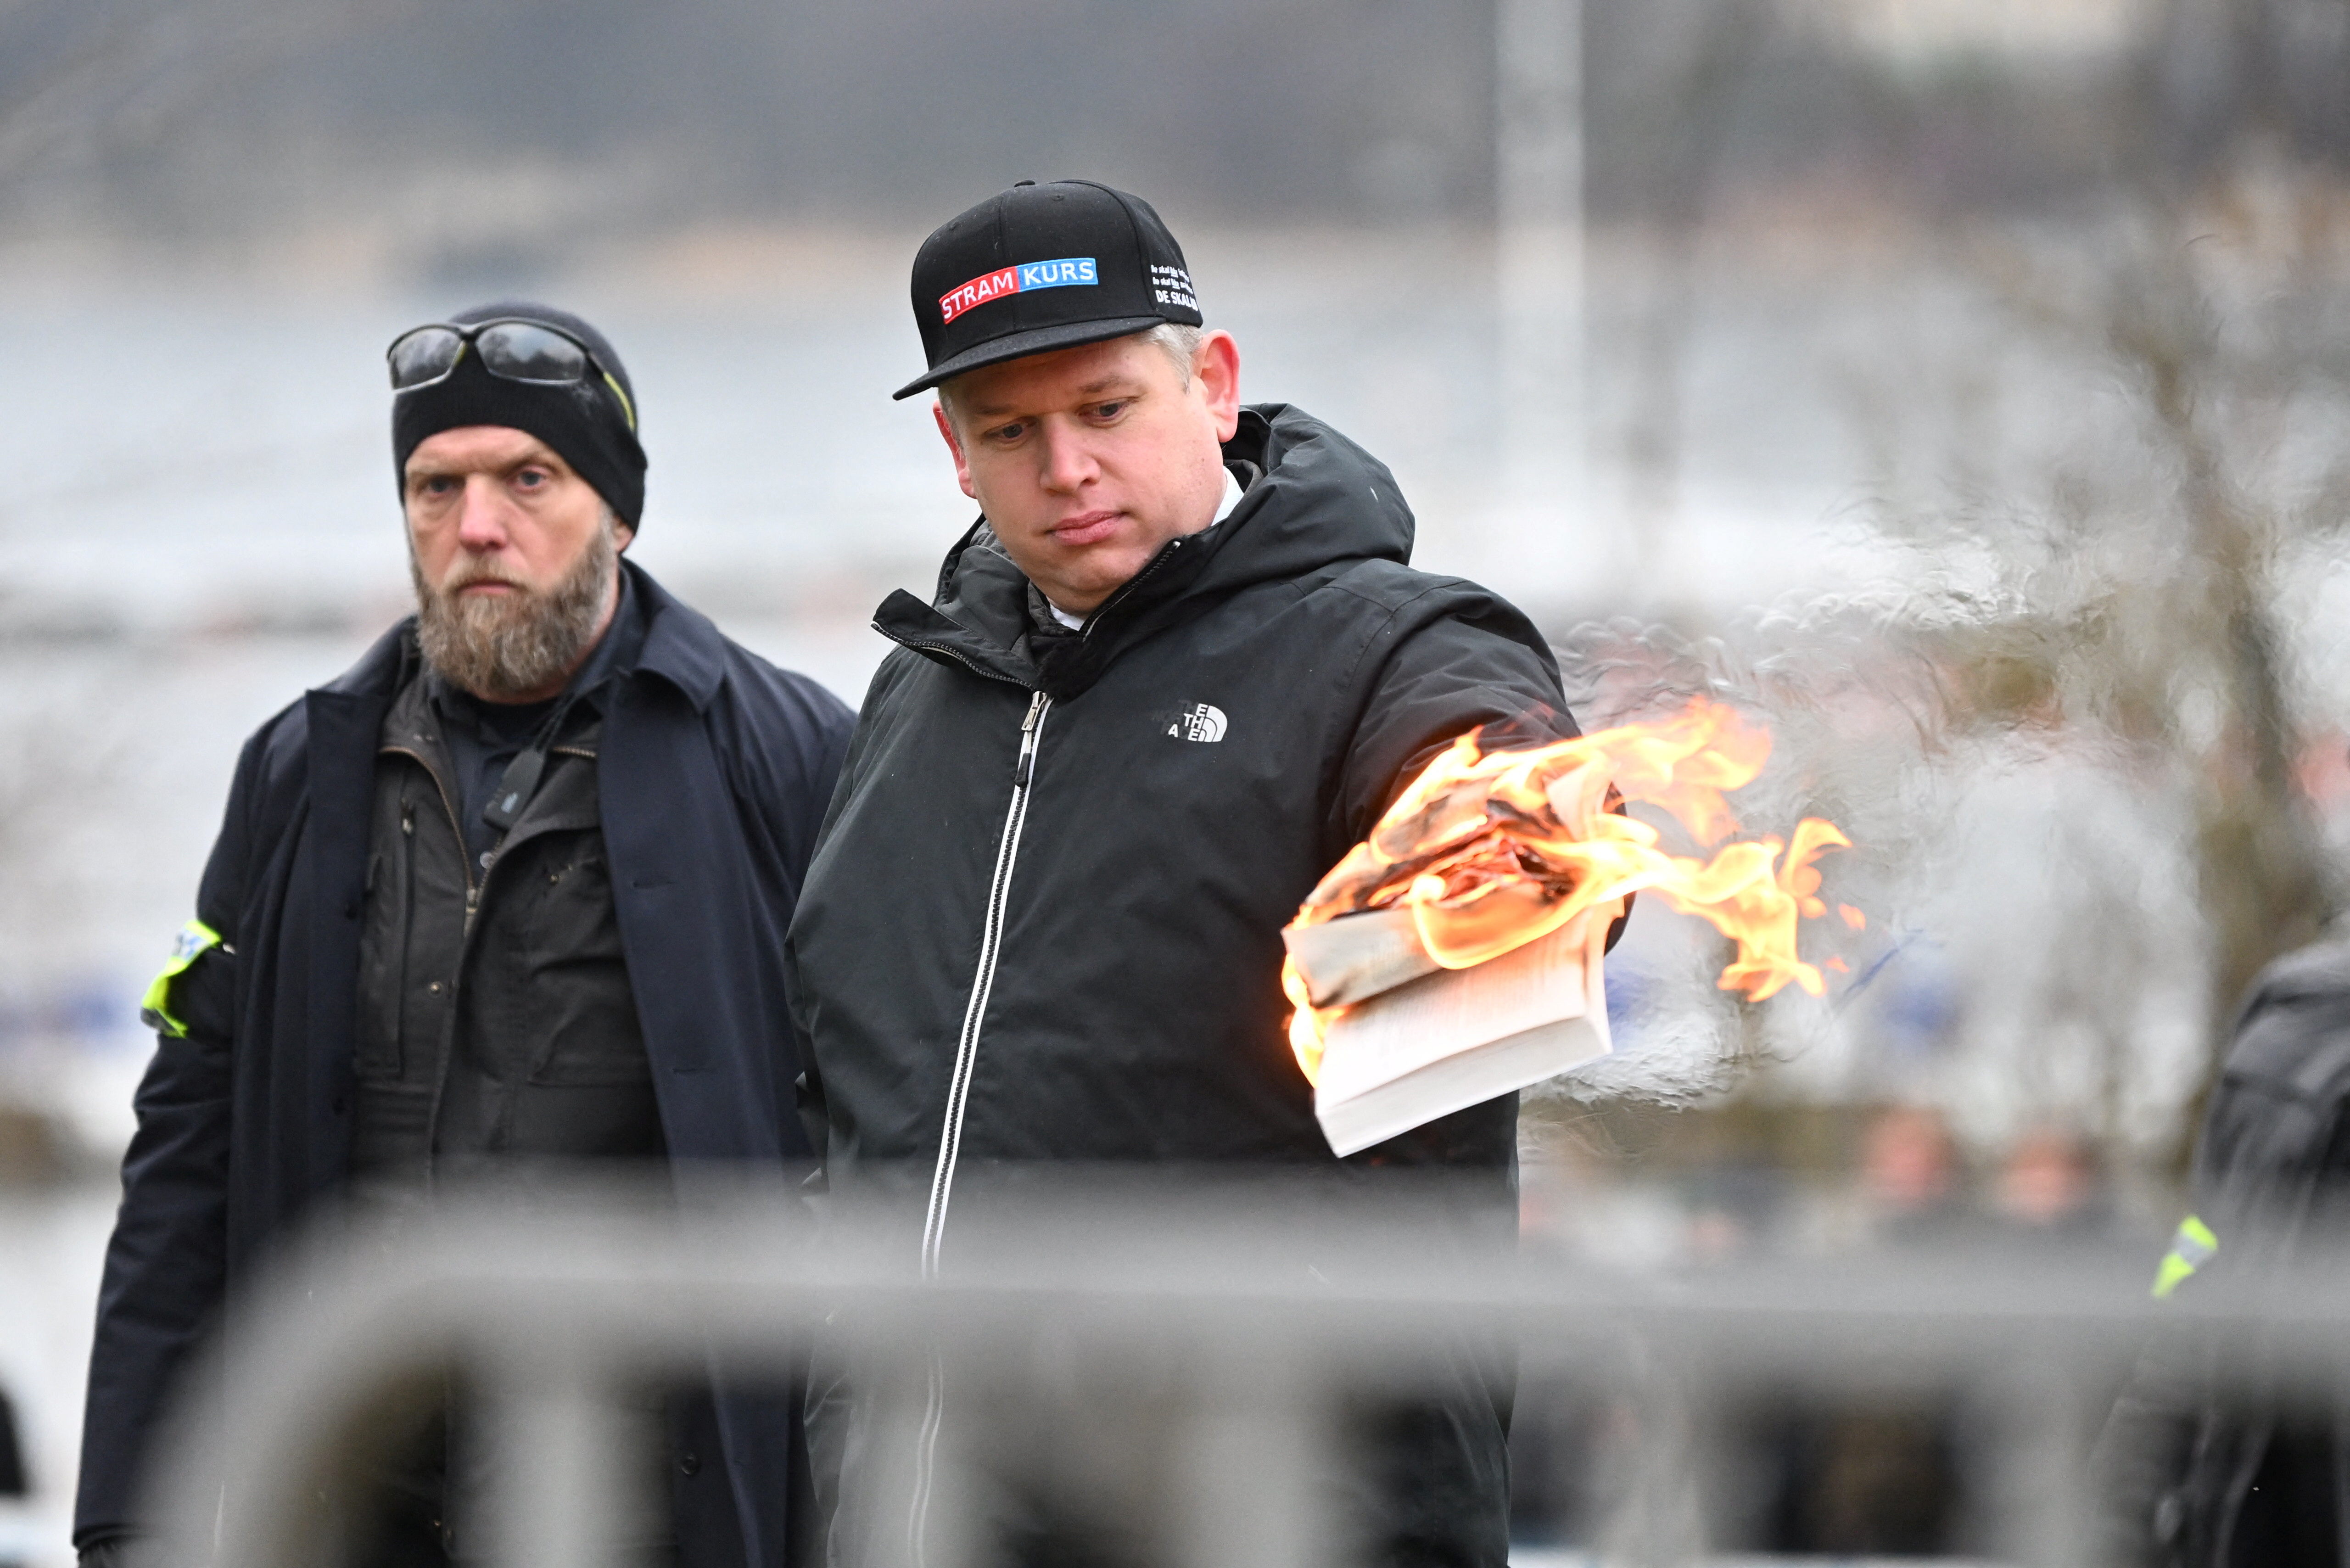 El político danés-sueco de extrema derecha Rasmus Paludan prendió fuego el sábado a un ejemplar del Corán frente a la embajada de Turquía en la capital sueca, (Fredrik Sandberg/TT News Agency/via REUTERS)